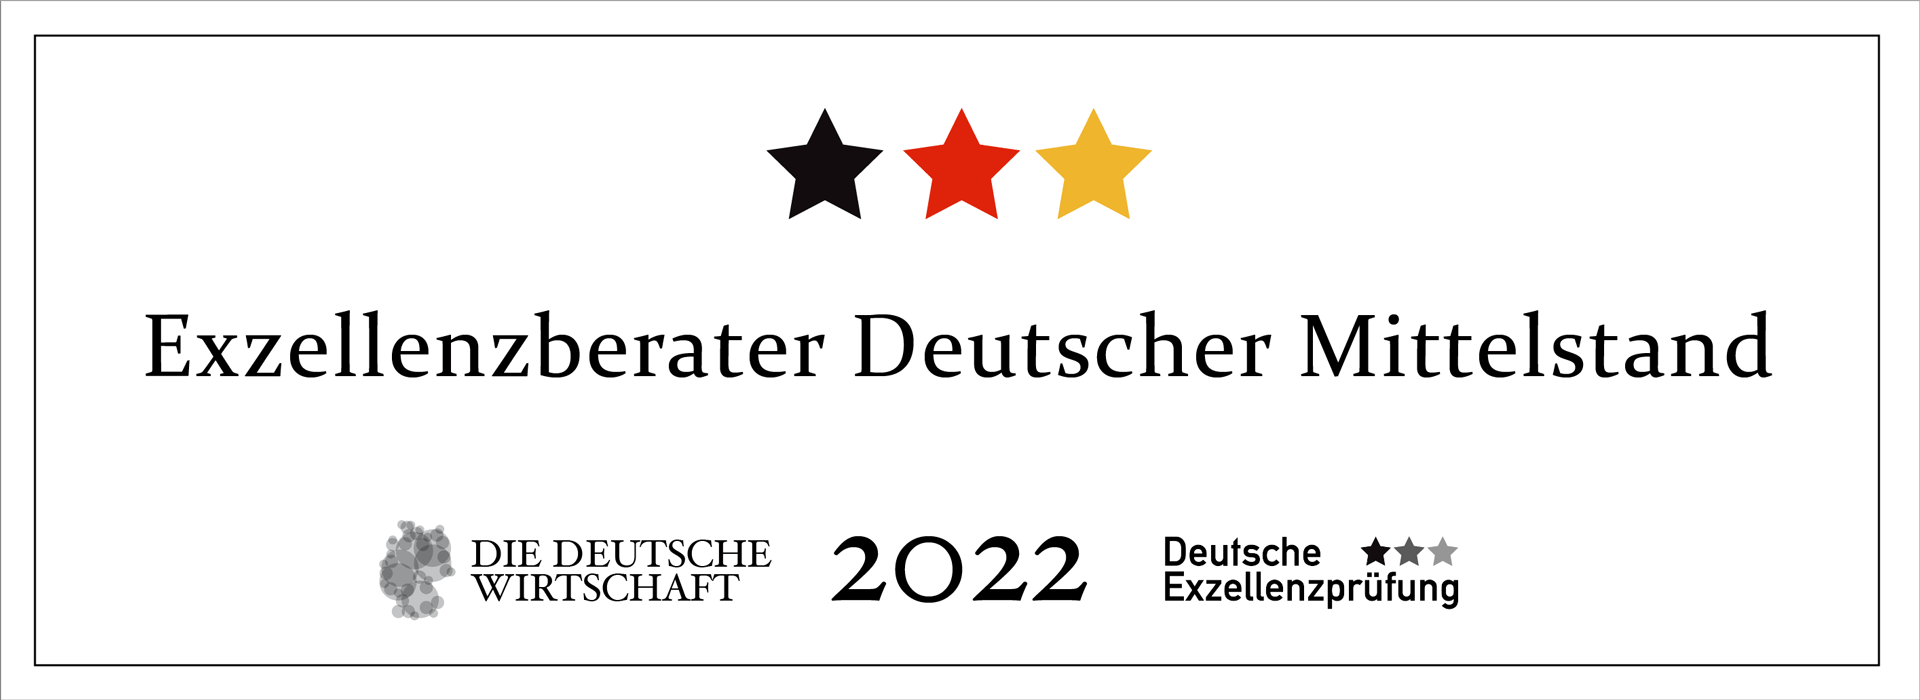 Auszeichnung Exzellenzberater 2022